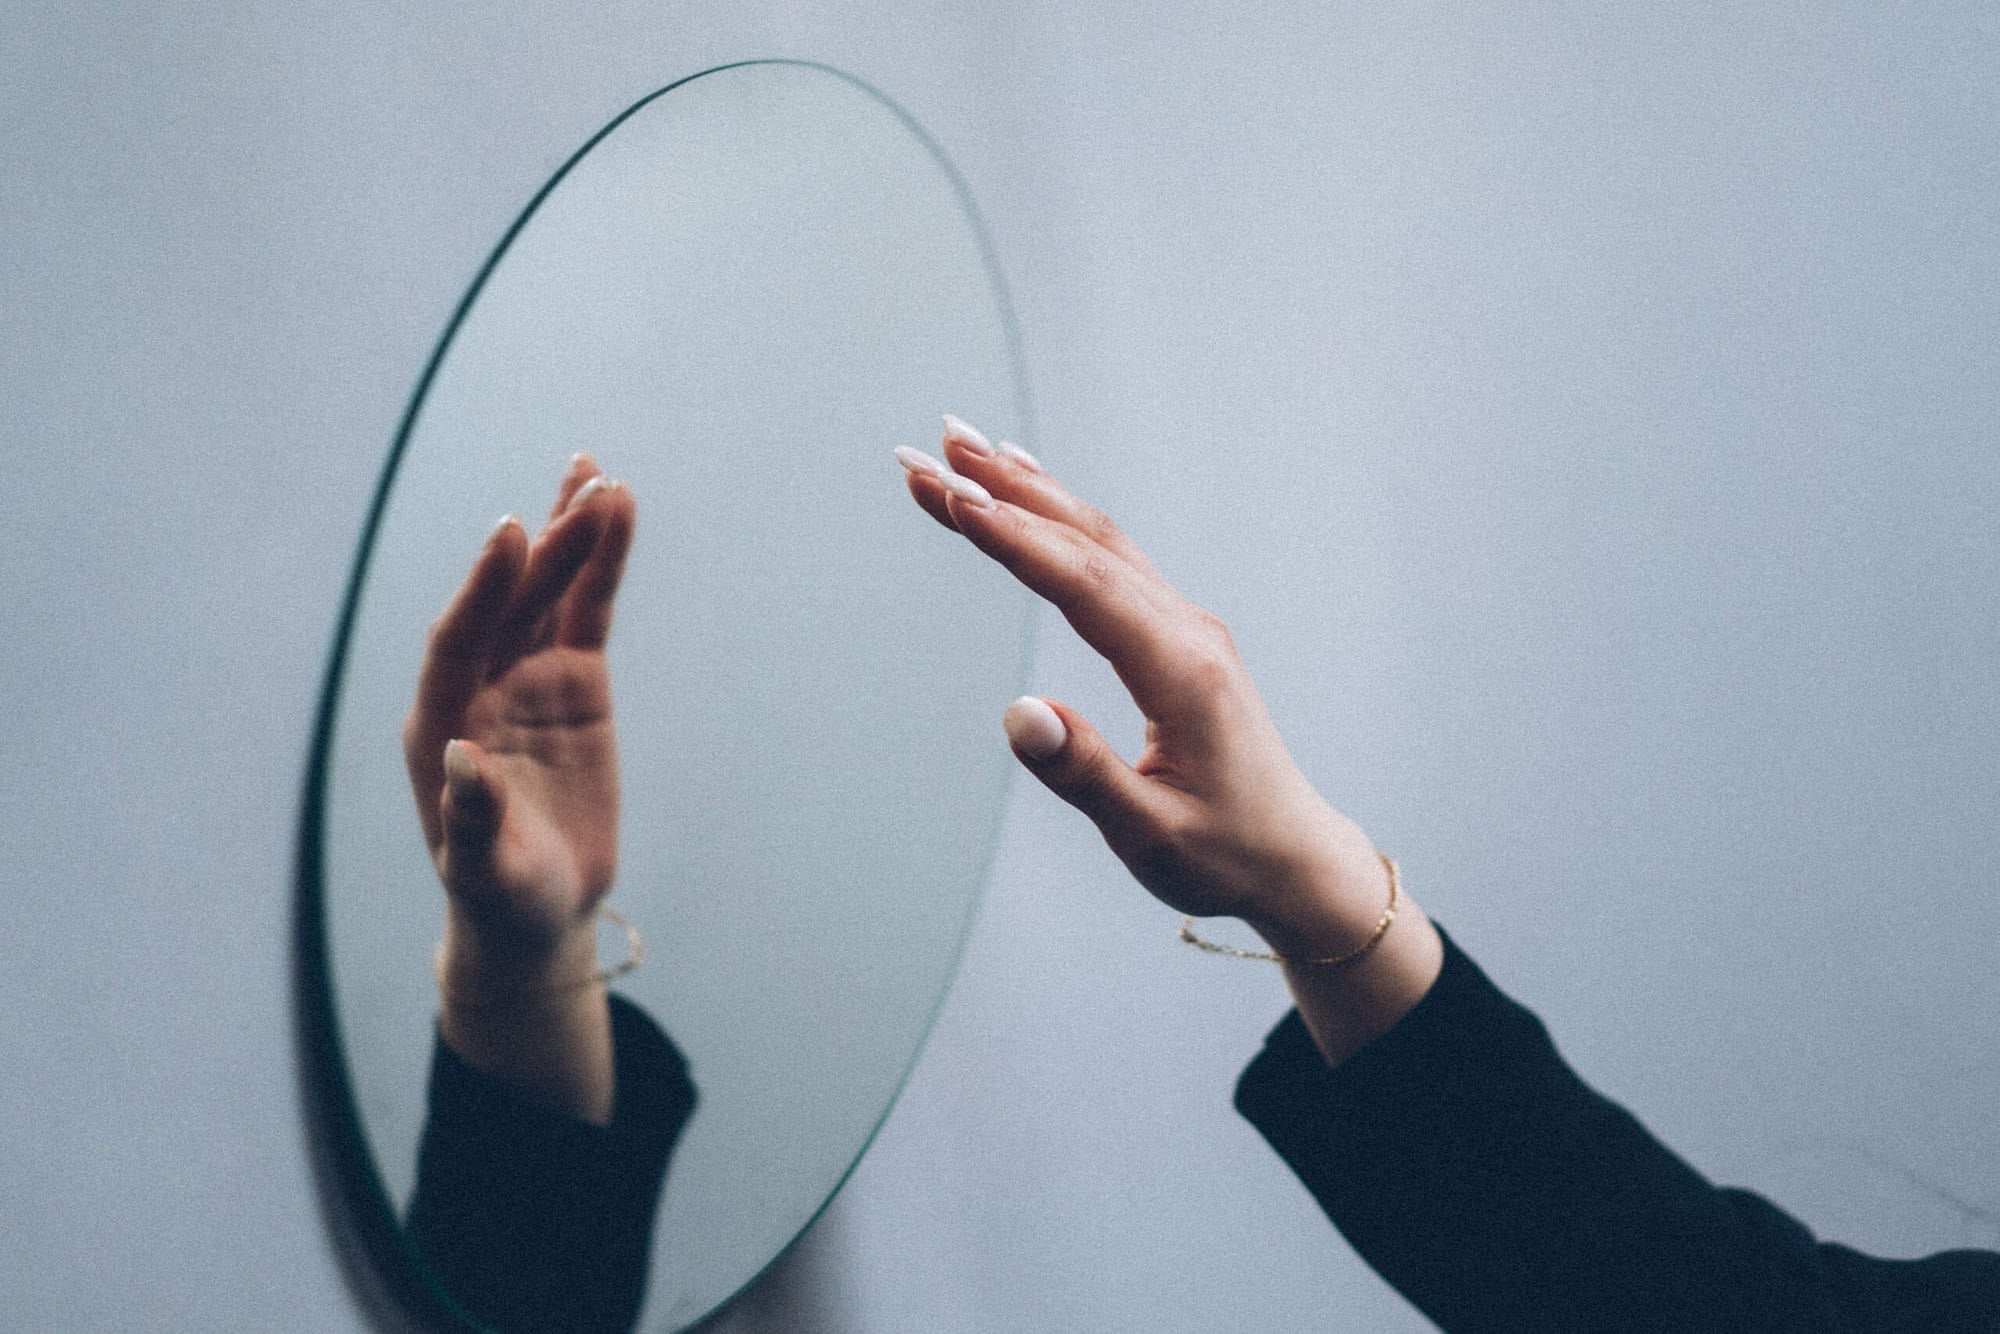 Eine Hand vor einem Spiegel un die Hand als Spiegelbild